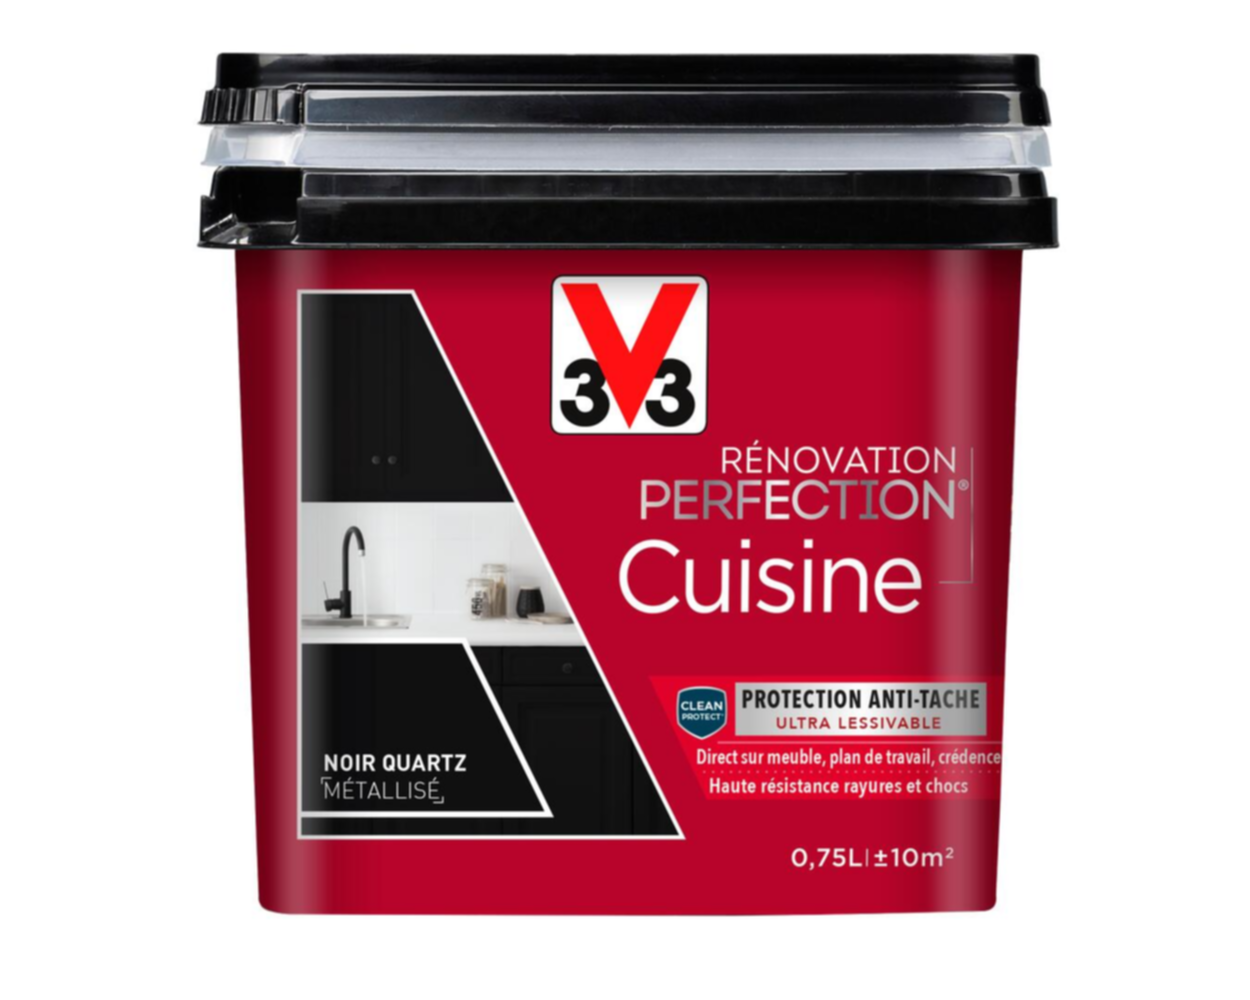 Peinture rénovation cuisine Perfection noir quartz satin 0,75l - V33